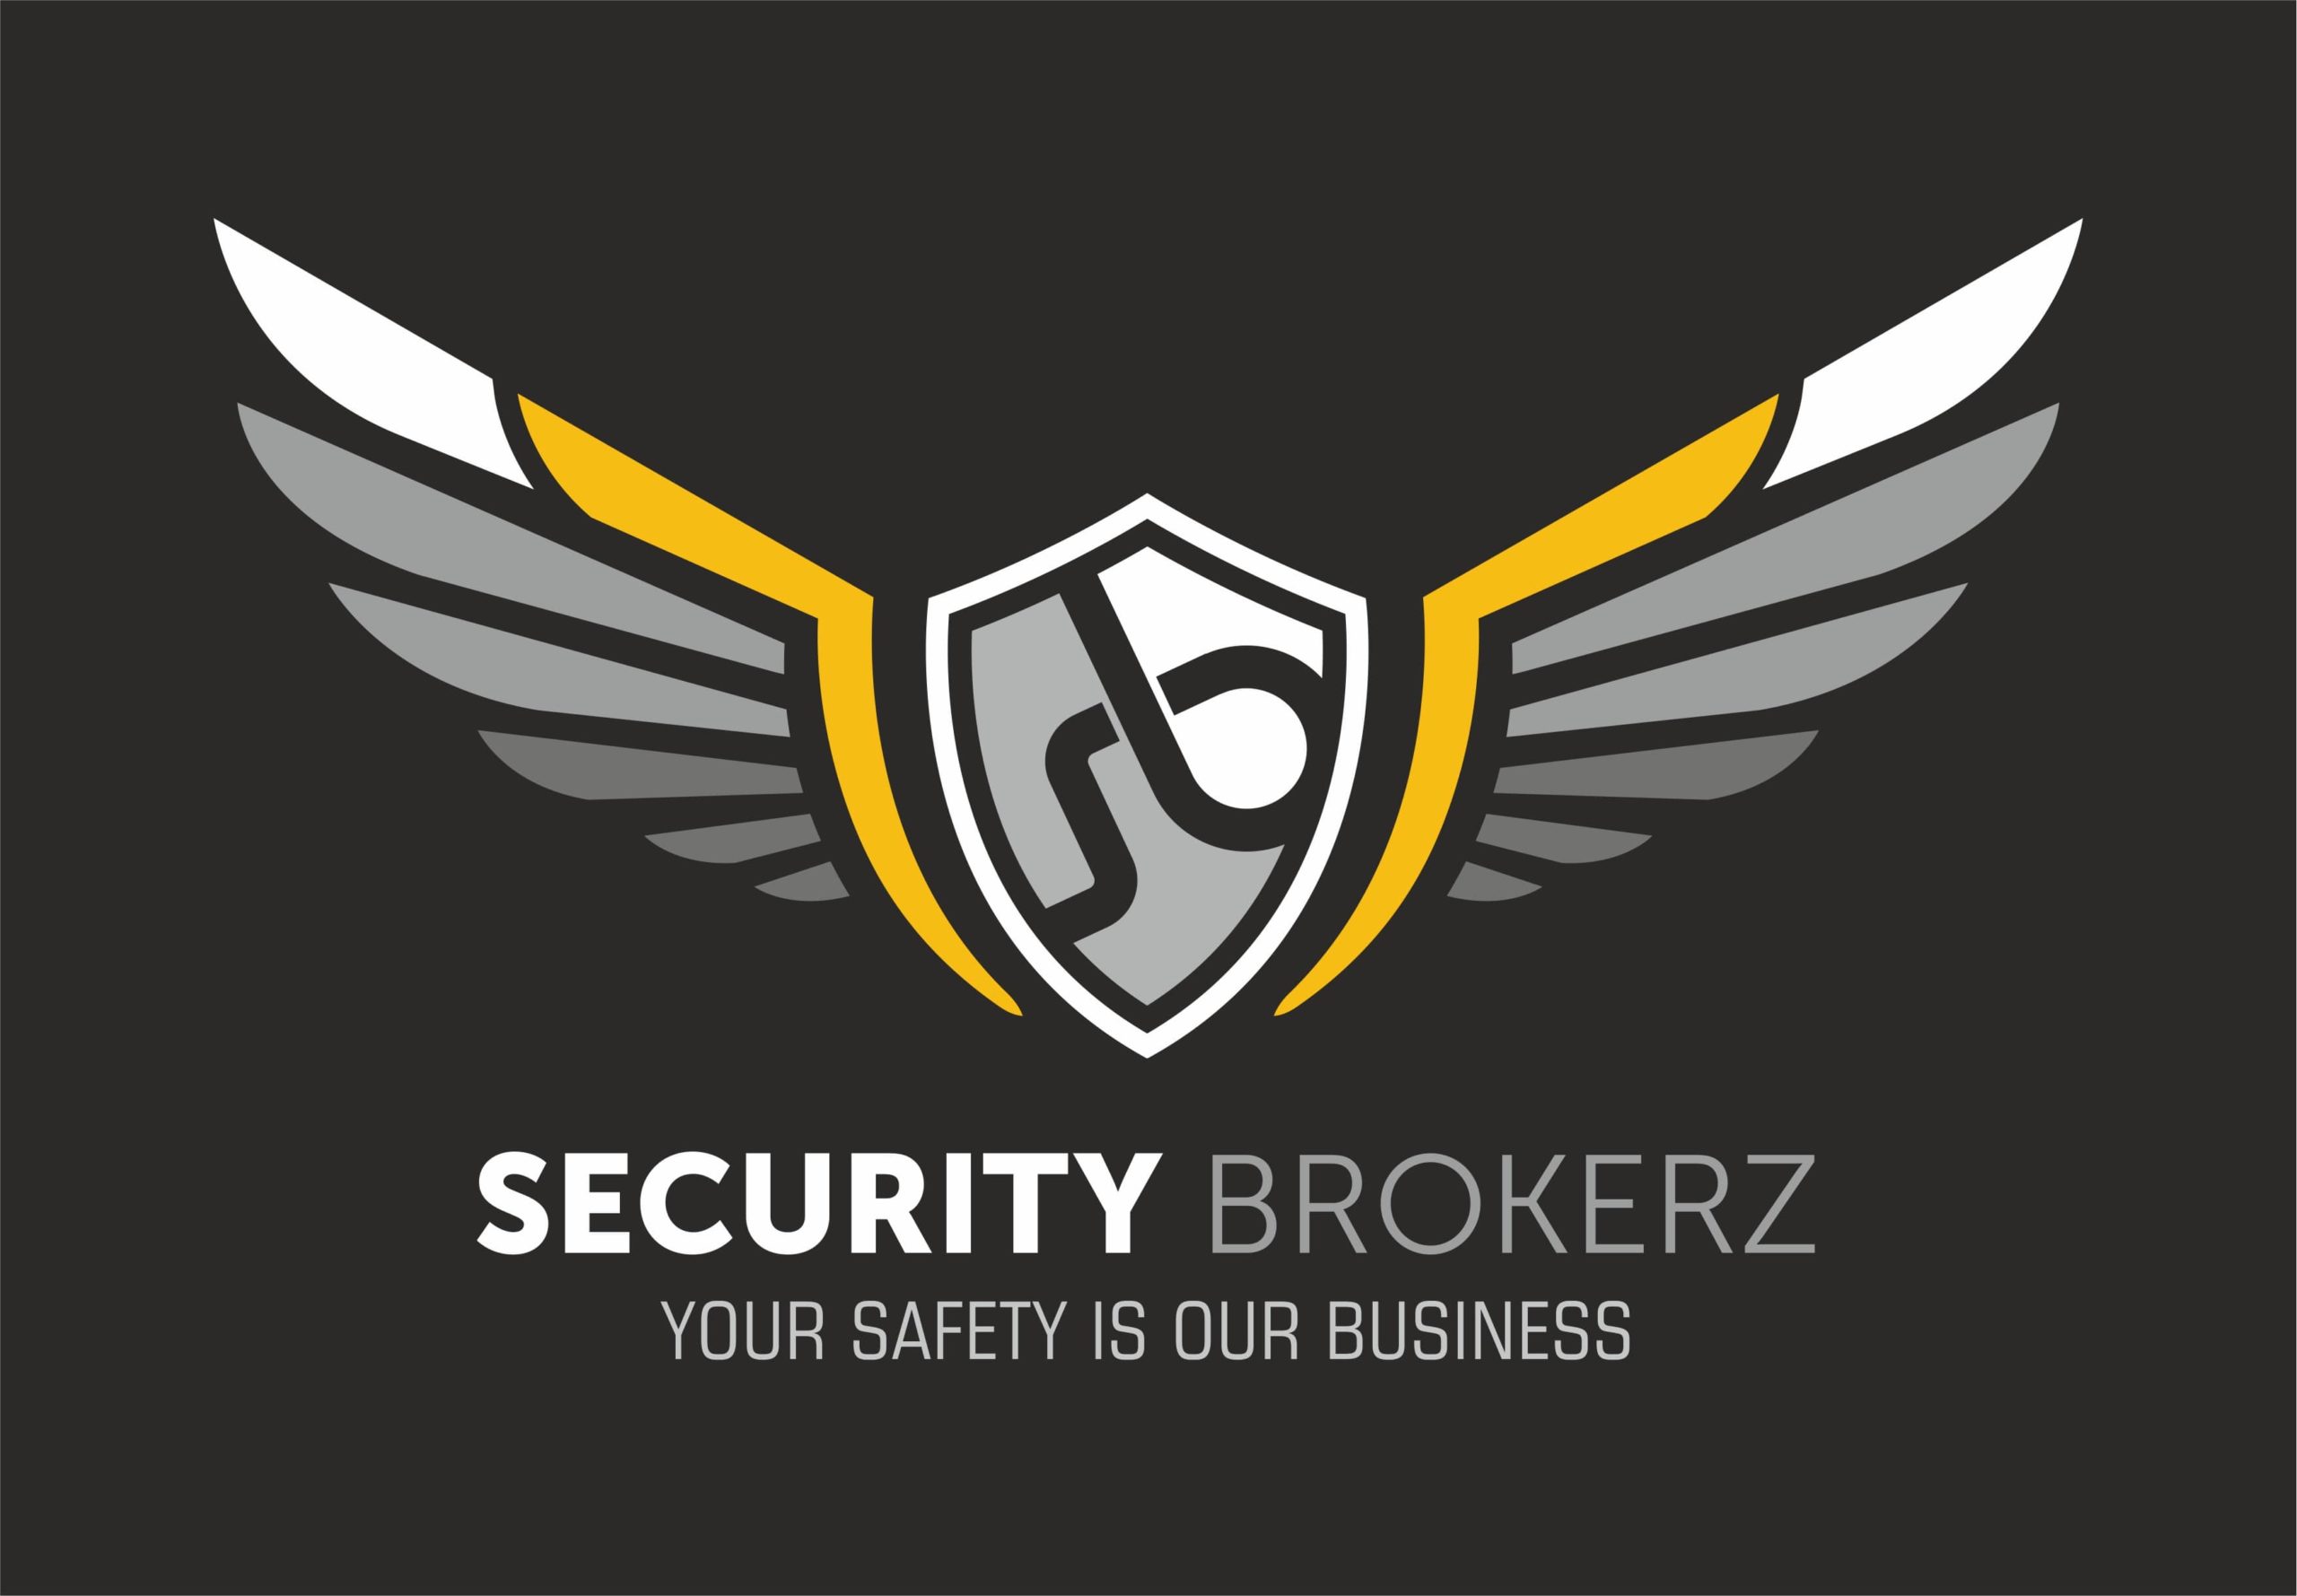 Logo of company security brokerz